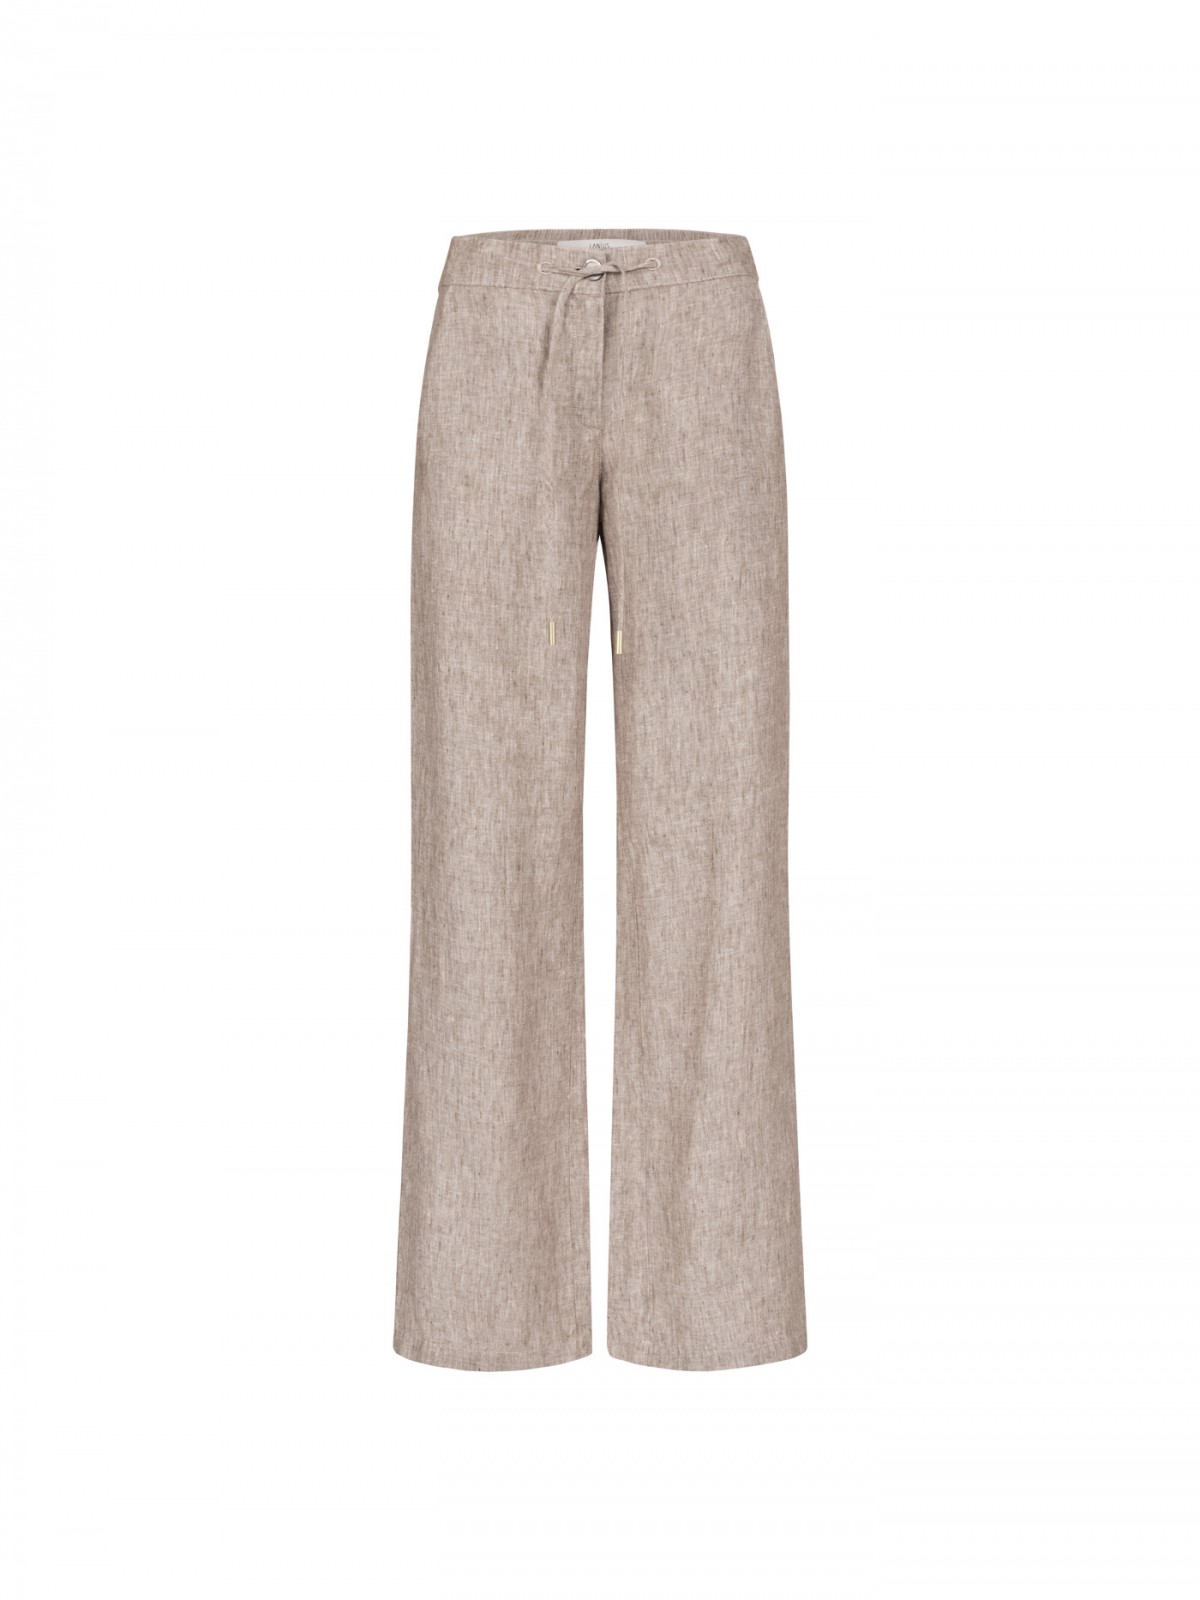 Marlene trousers in organic linen